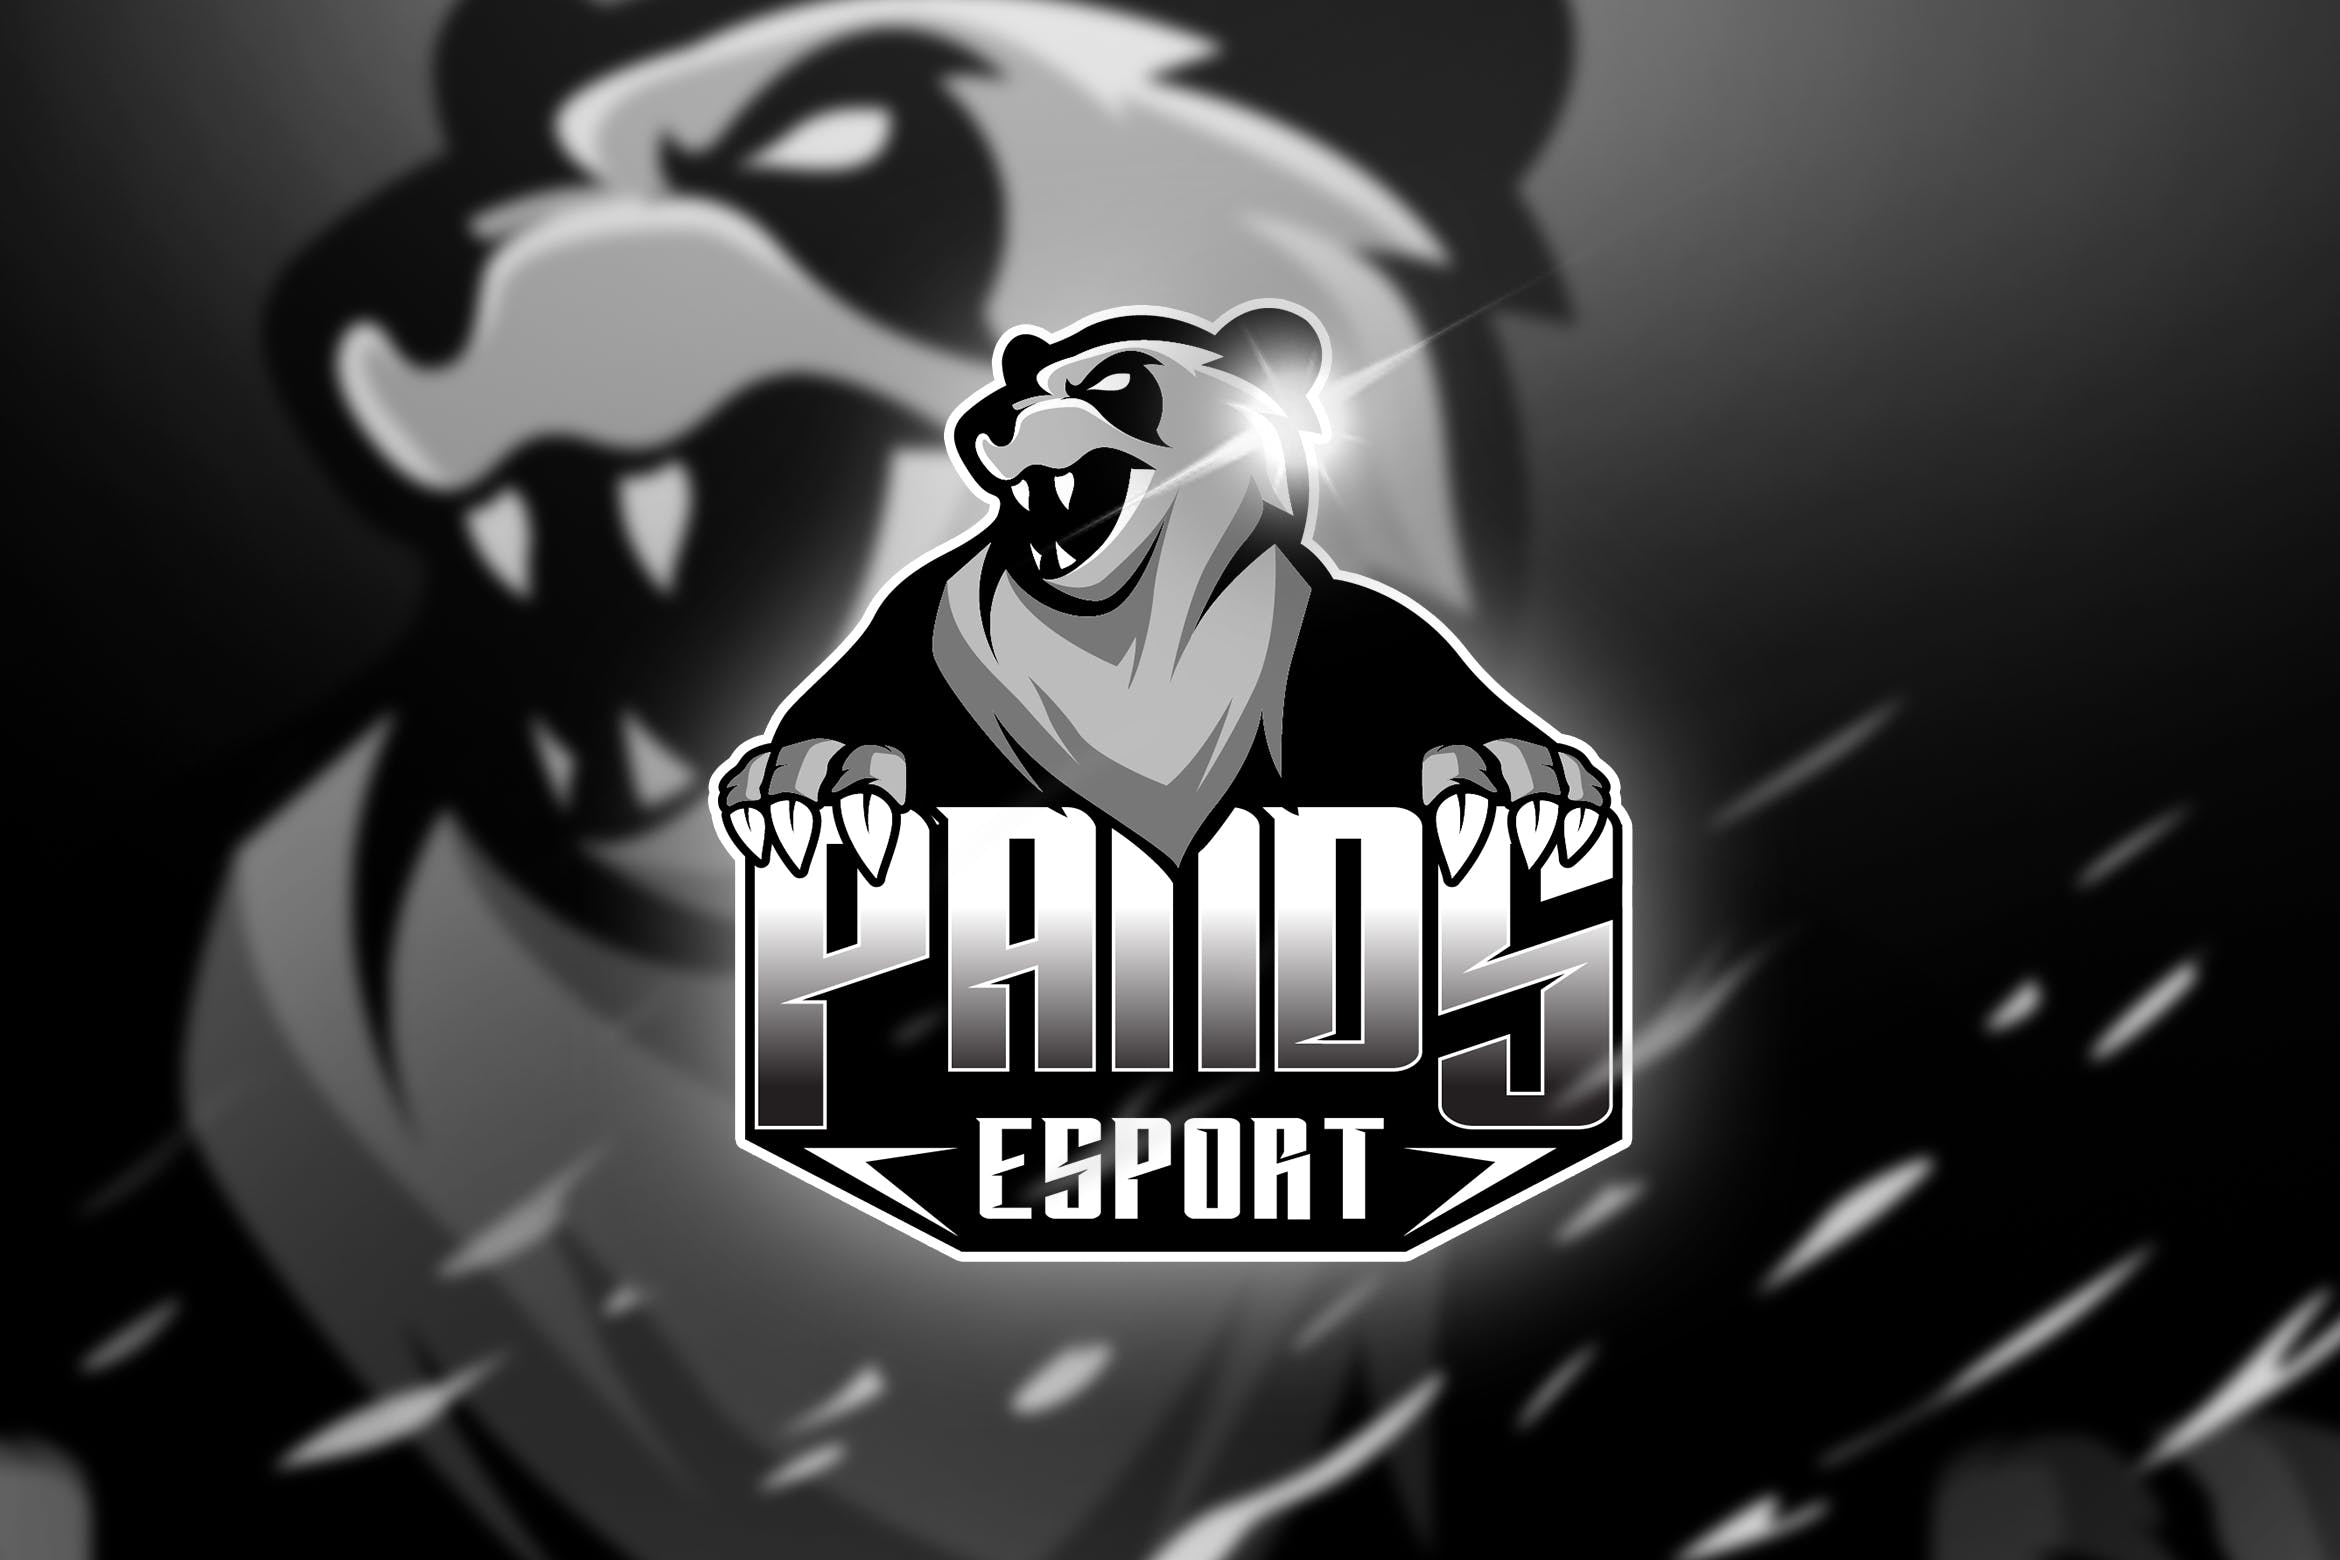 灰熊电子竞技吉祥物队徽Logo标志设计模板 Pands – Mascot & Logo Esport插图